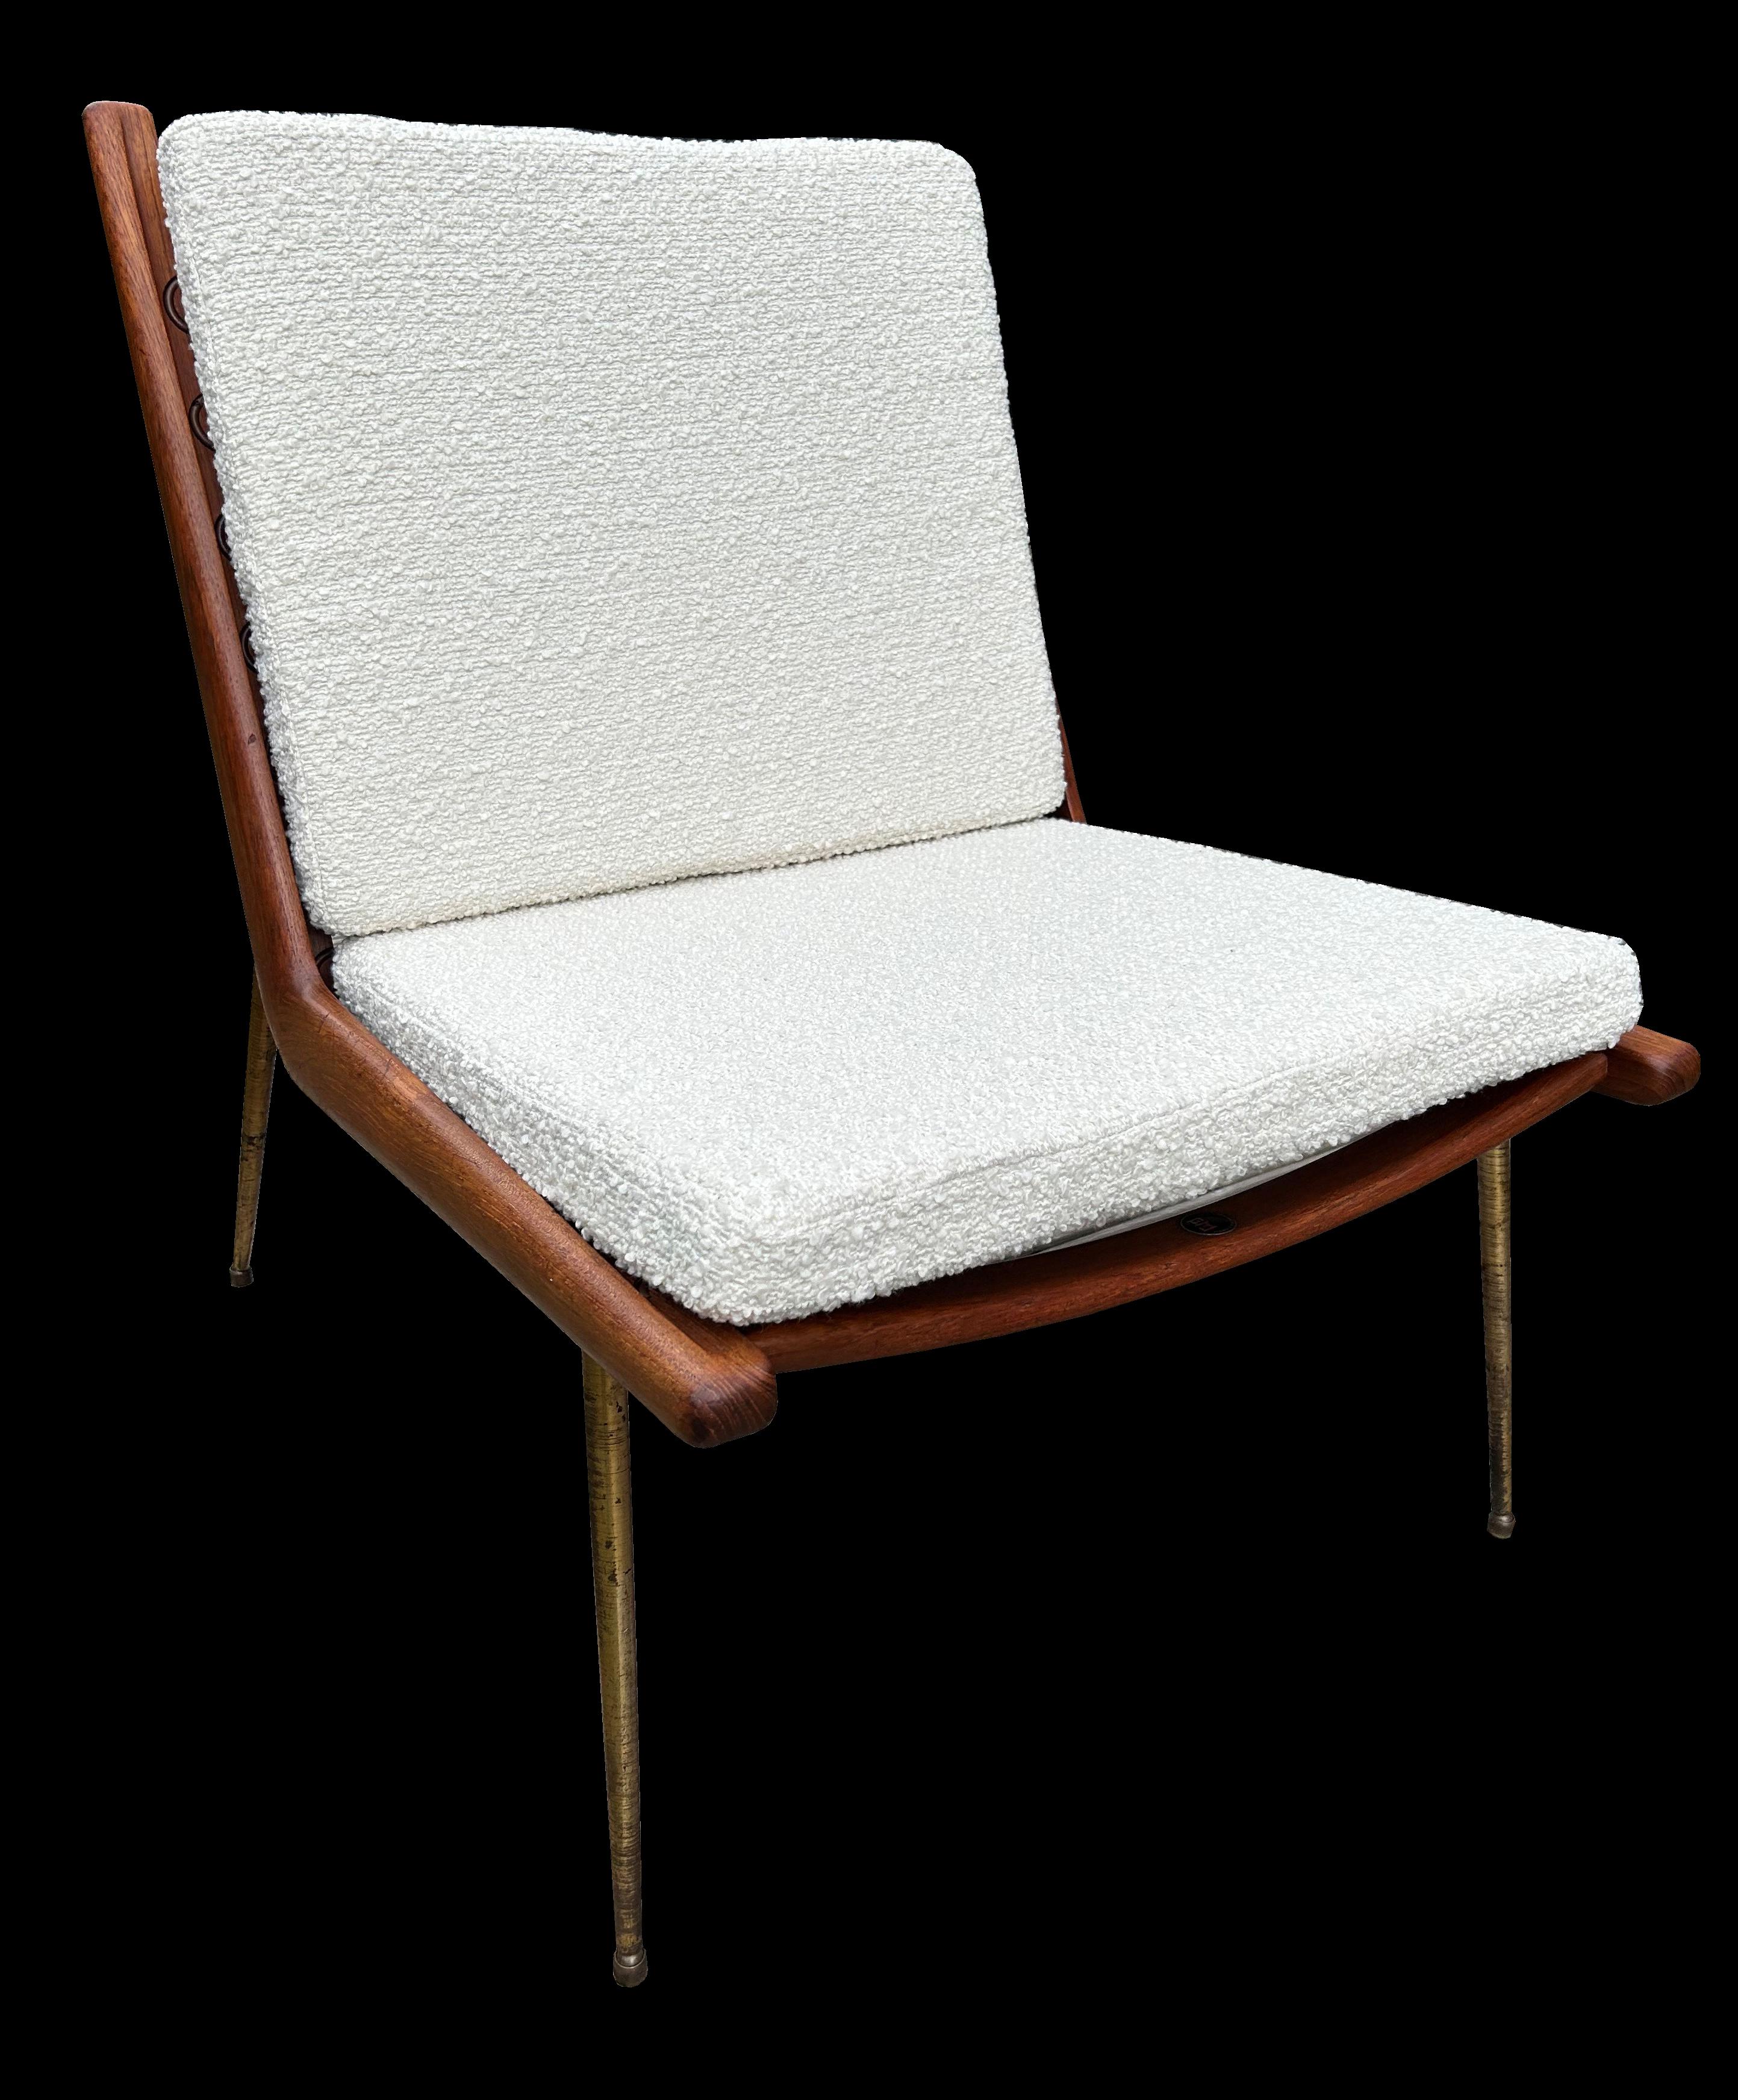 Es handelt sich um ein sehr gutes, originales Exemplar dieses klassischen Stuhls, frisch gepolstert mit weißem Bouclé.